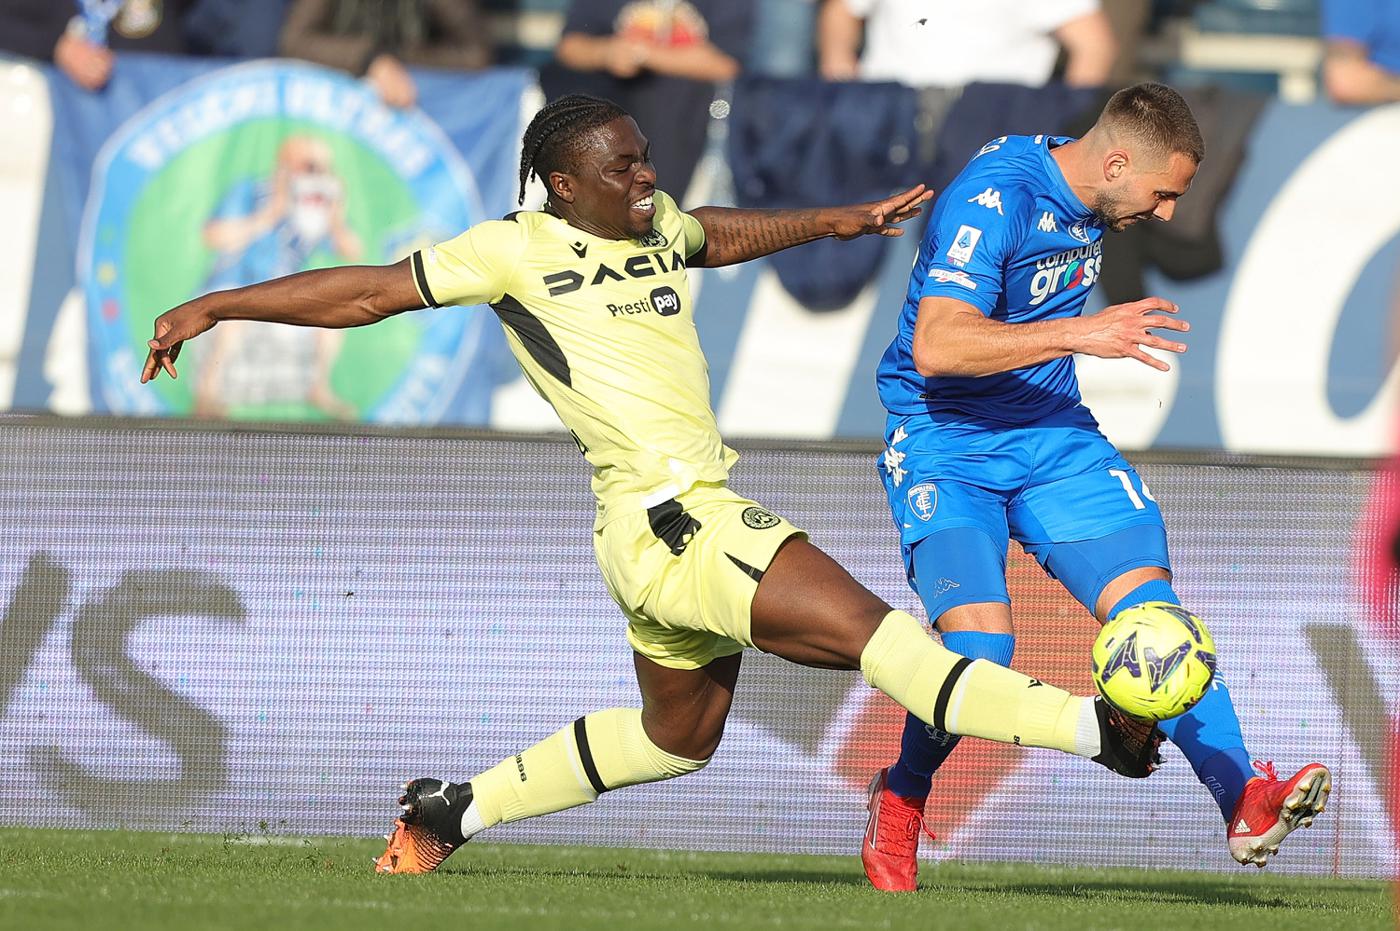 Empoli v Udinese - 0-1. Mistrzostwa Włoch, runda 26. Przegląd meczu, statystyki.